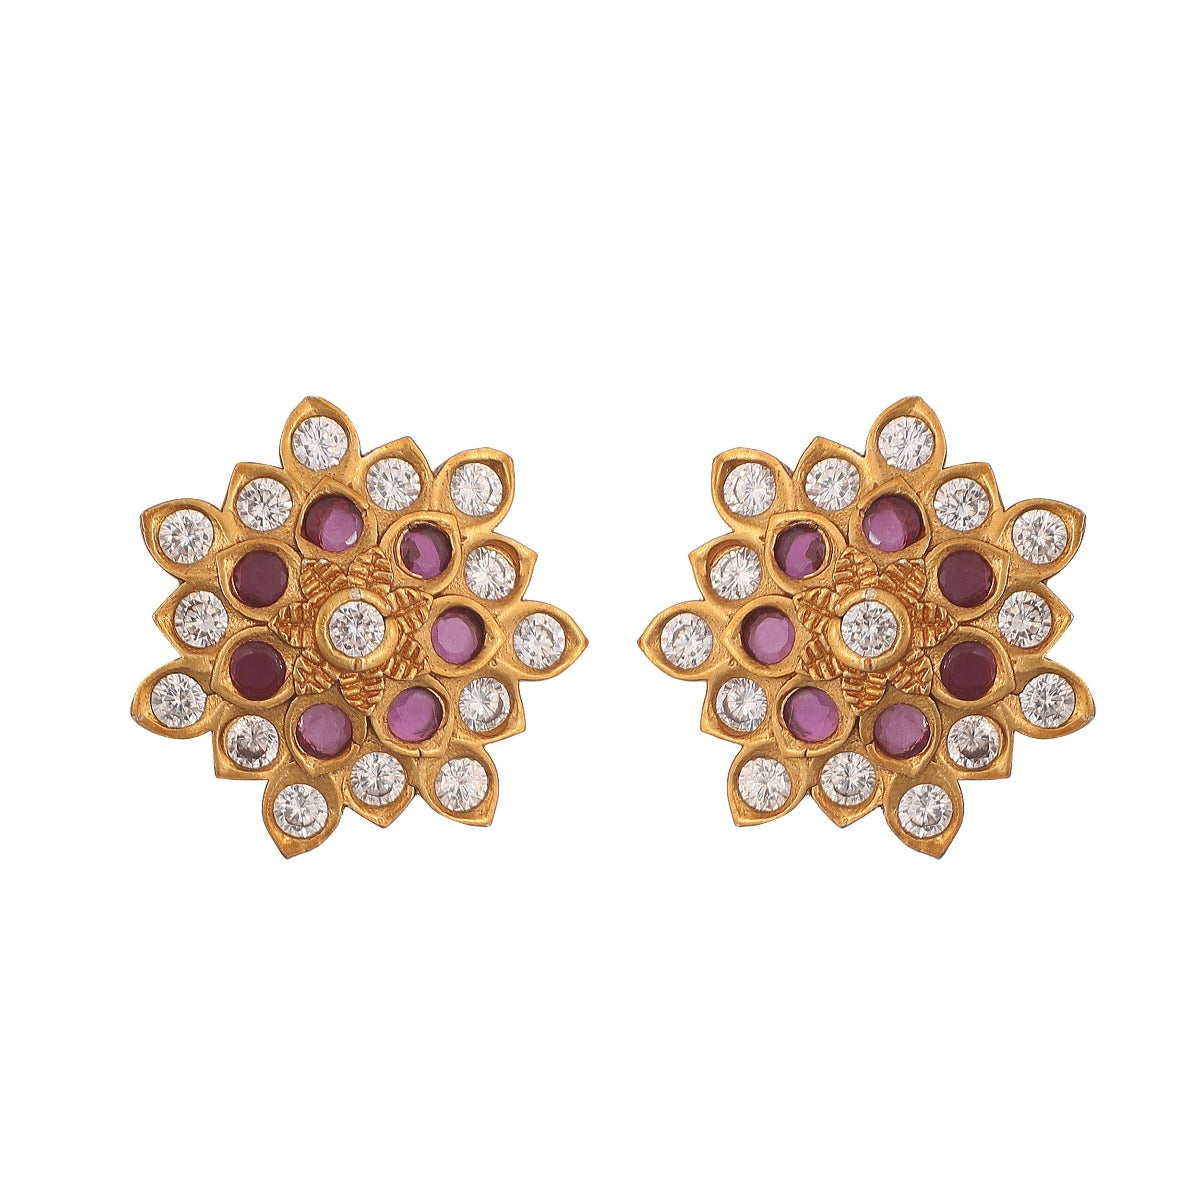 20k gold earrings ear stud handmade jewelry traditional design | eBay